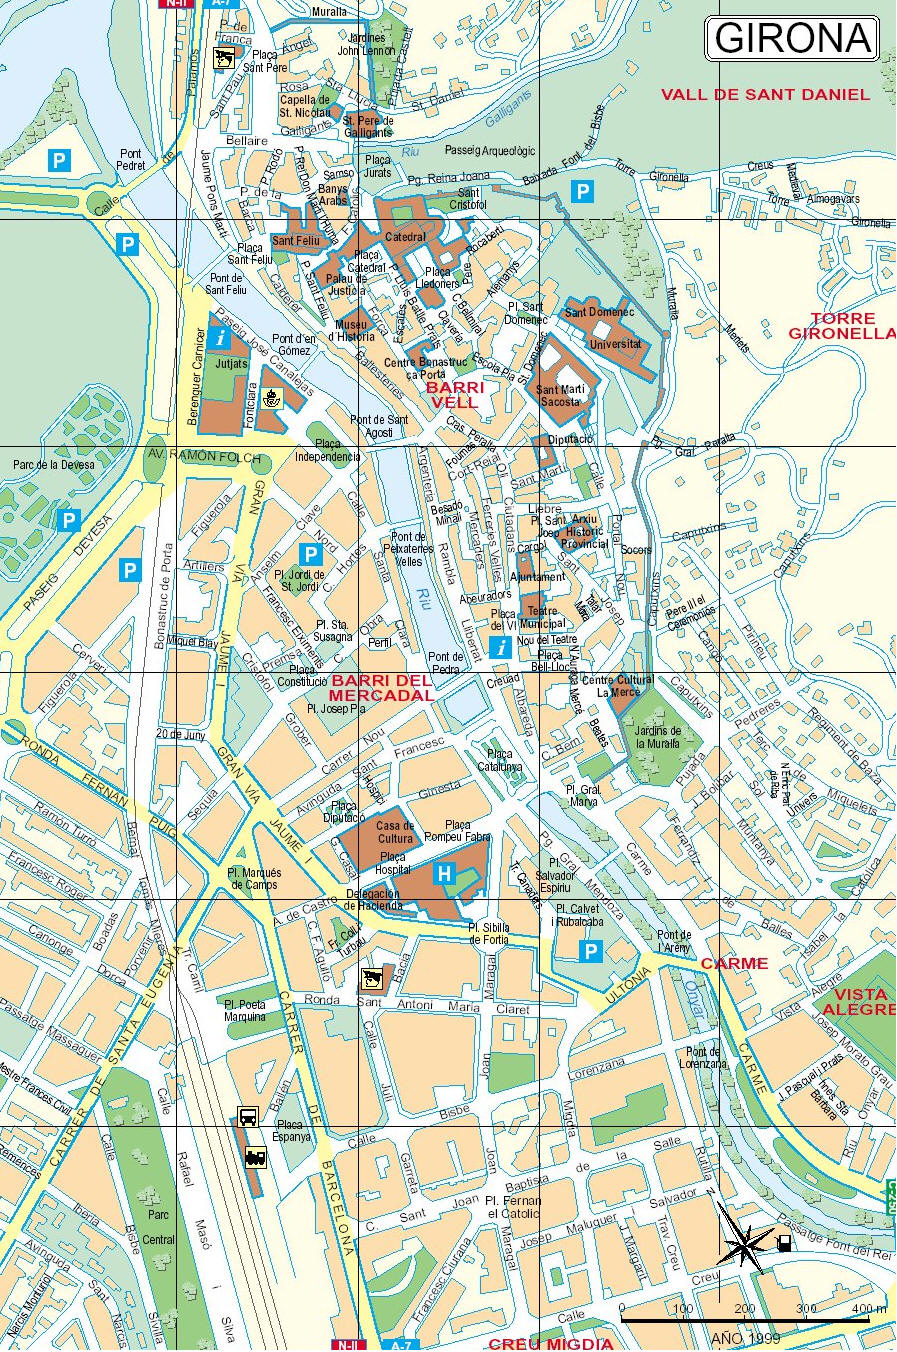 Mappa di Girona in Spagna